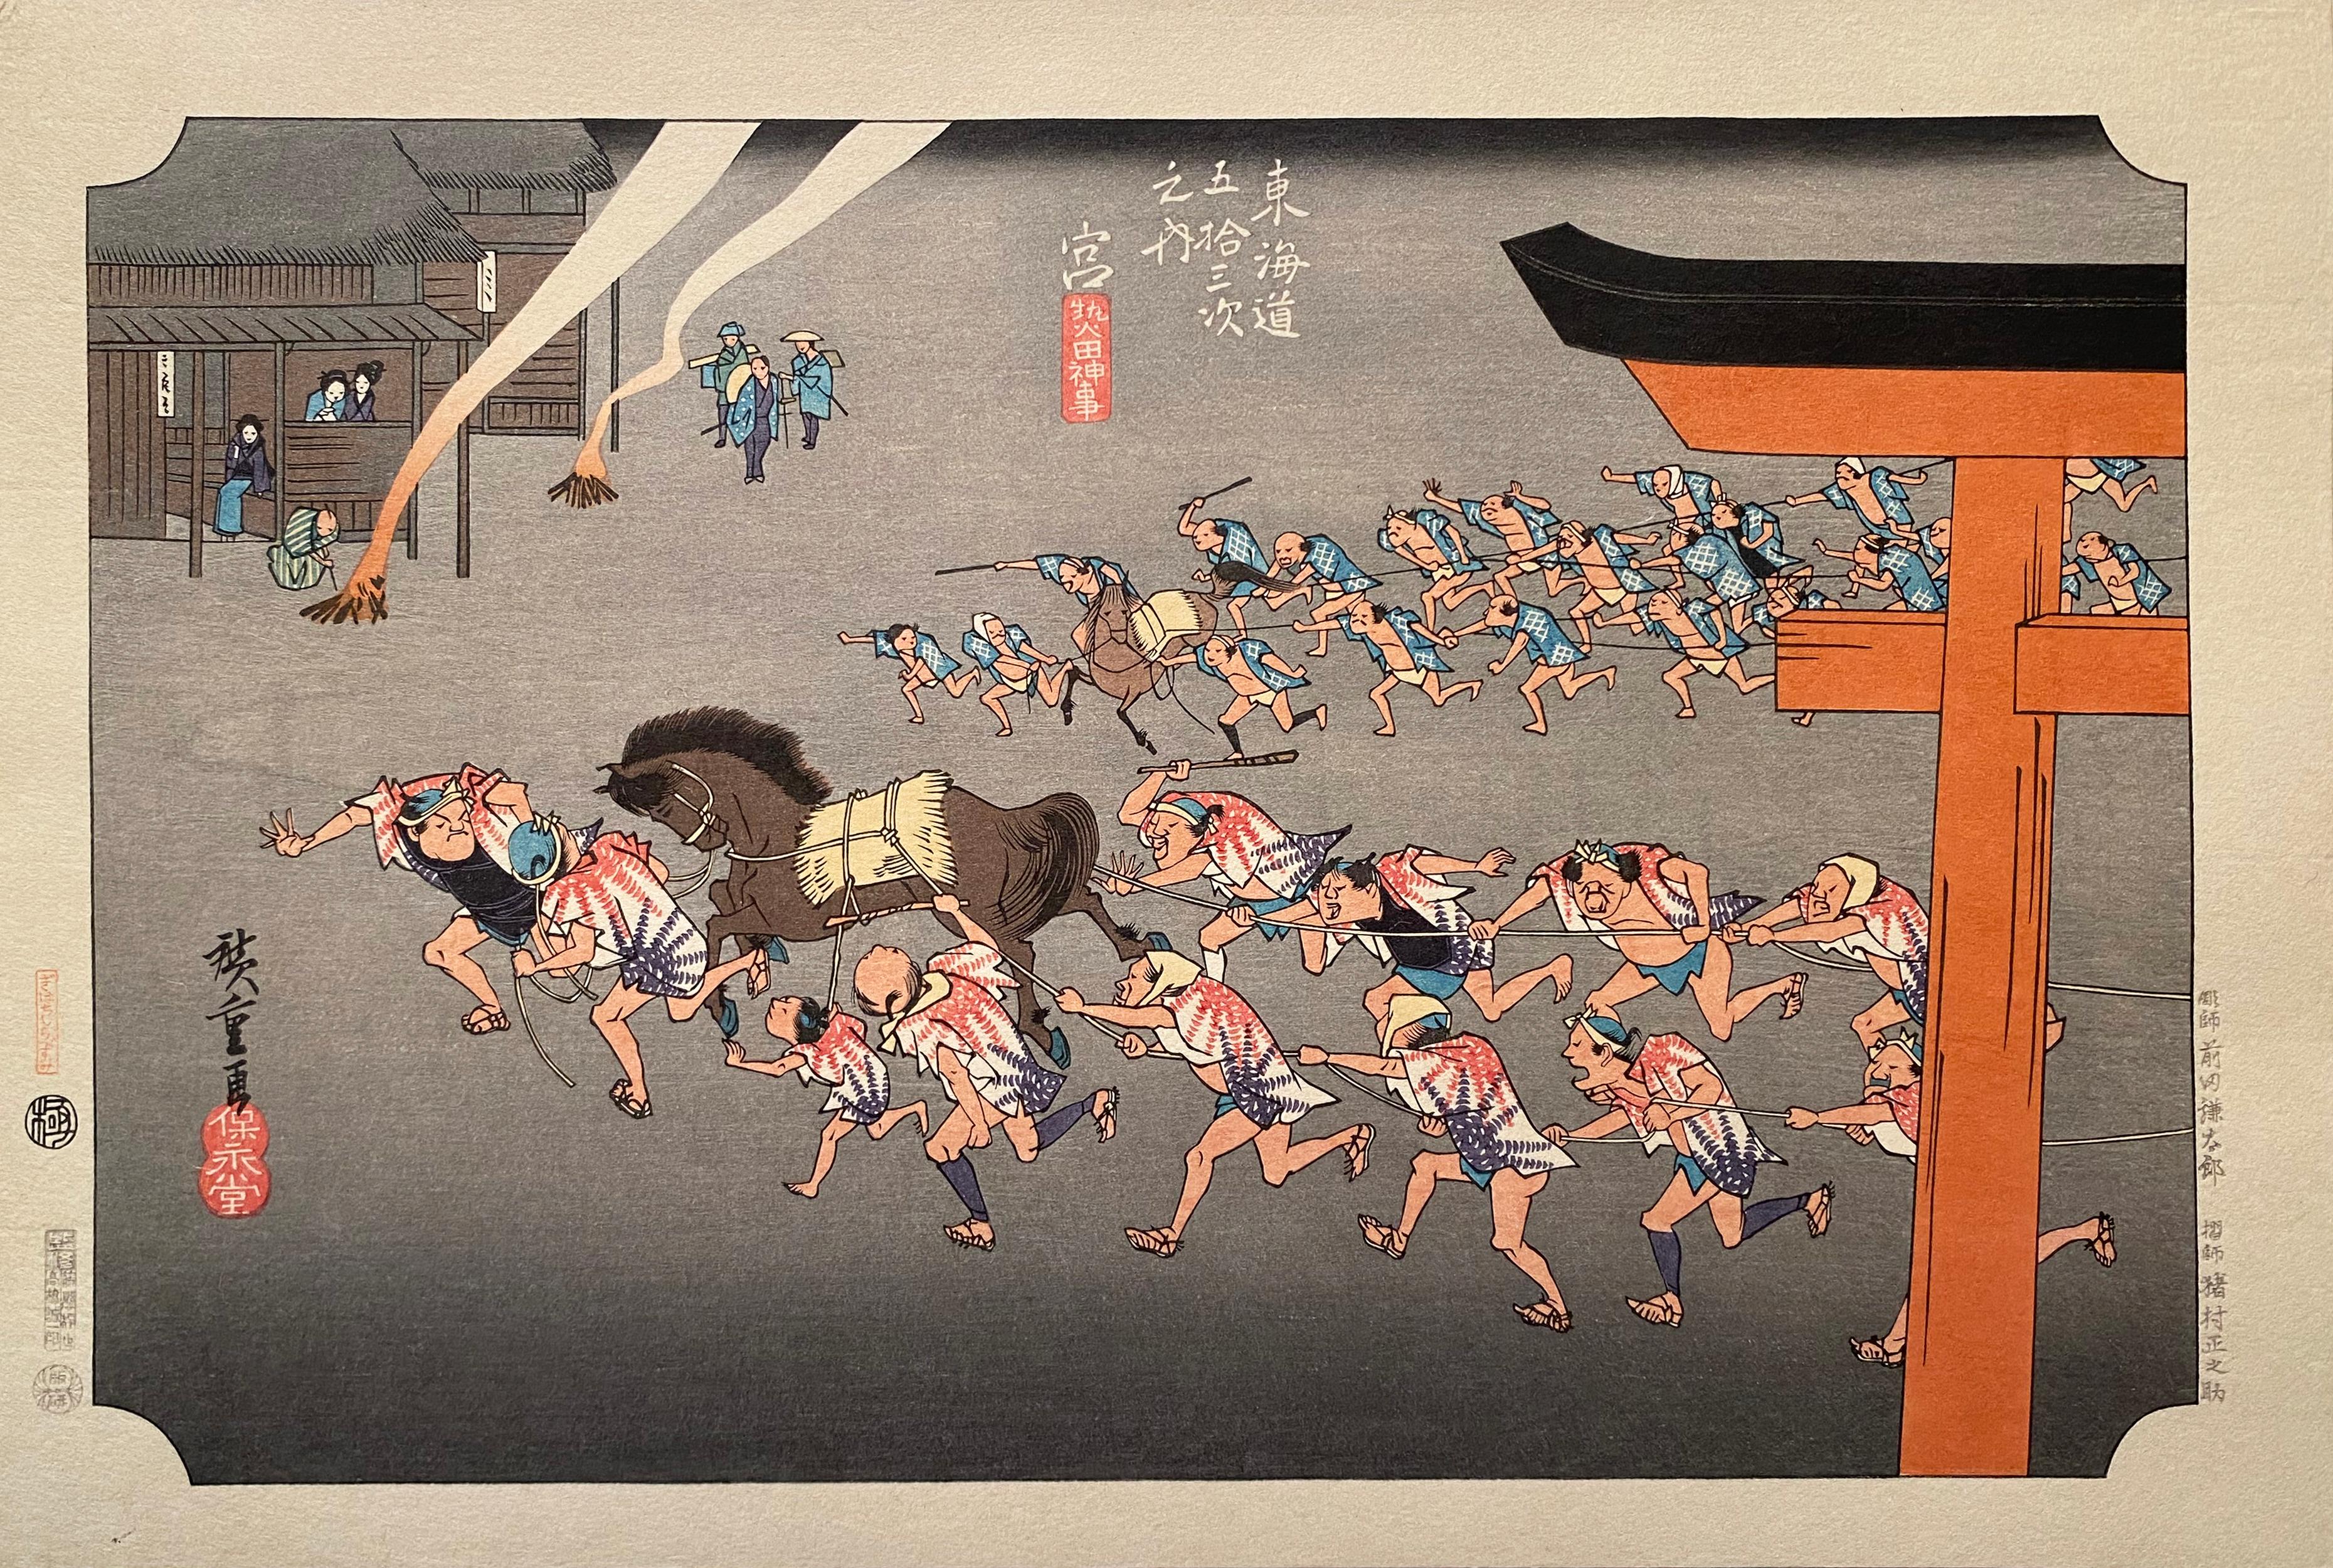 Utagawa Hiroshige (Ando Hiroshige) Landscape Print - 'Festival, Miya', After Utagawa Hiroshige 歌川廣重, Ukiyo-e Woodblock, Tokaido